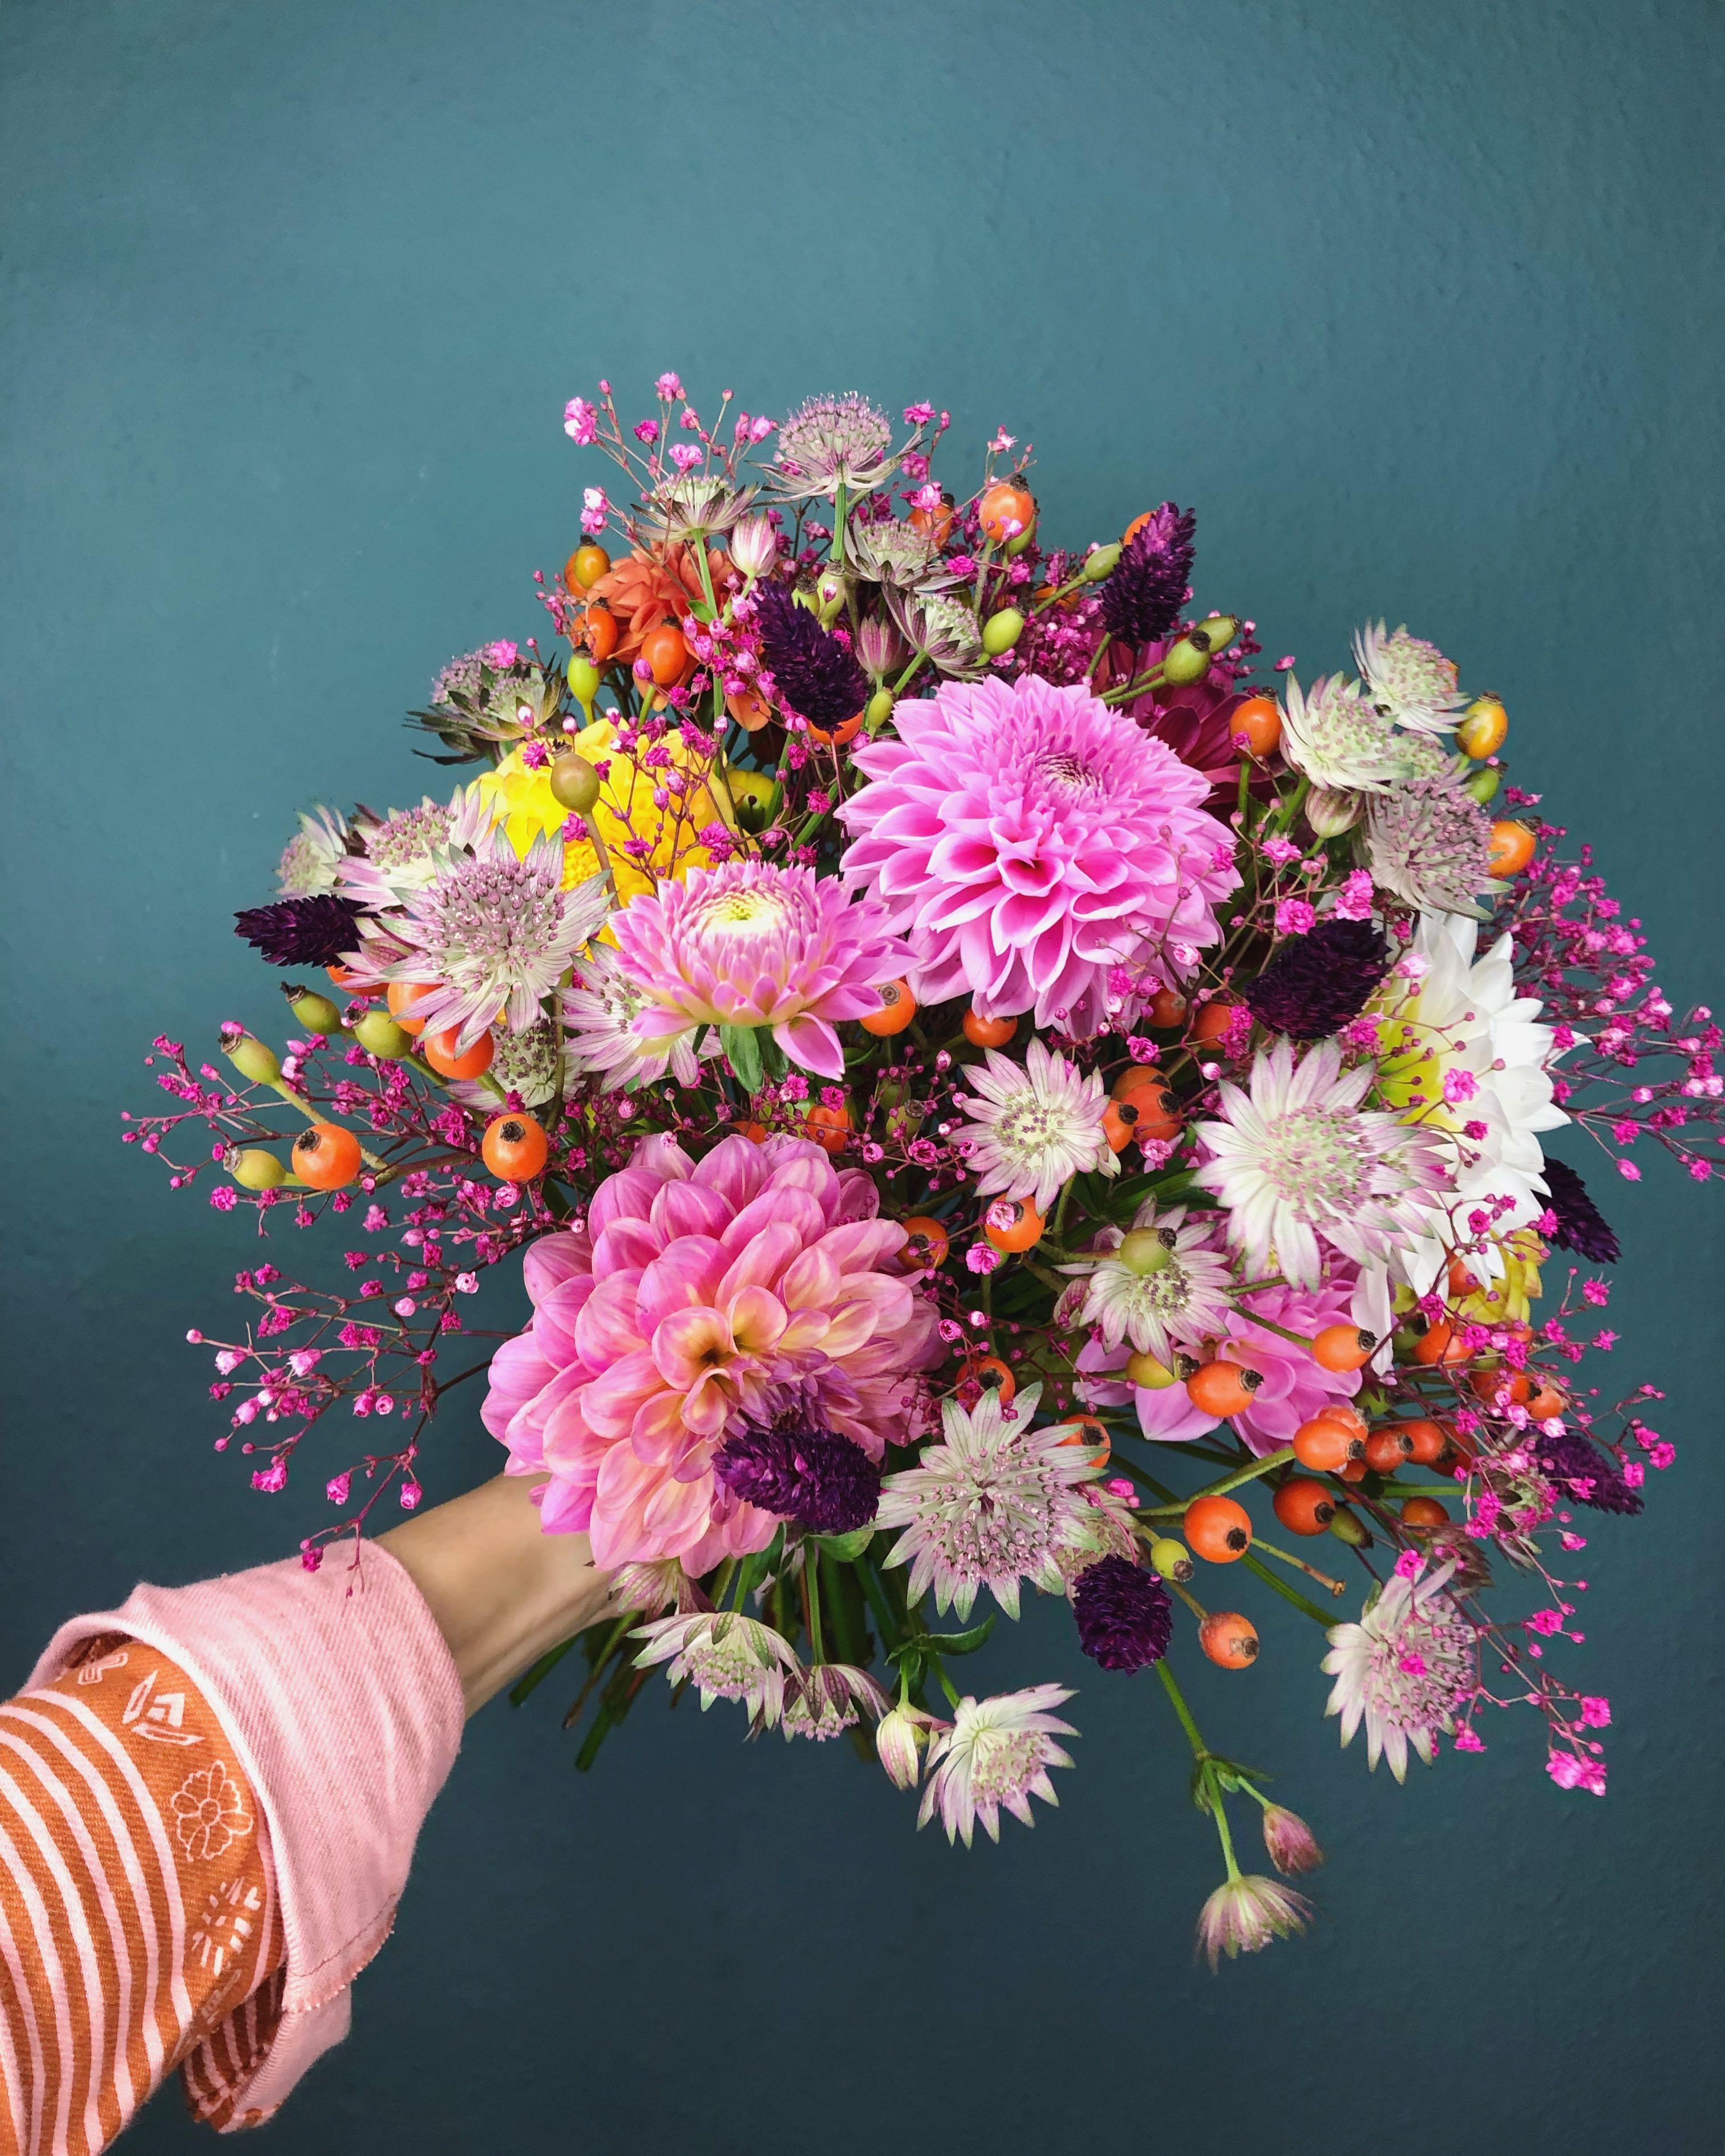 Happy Monday mit dieser Farbexplosion #flowerpower #freshflowers #colorful #decoration #blumen #blumenliebe